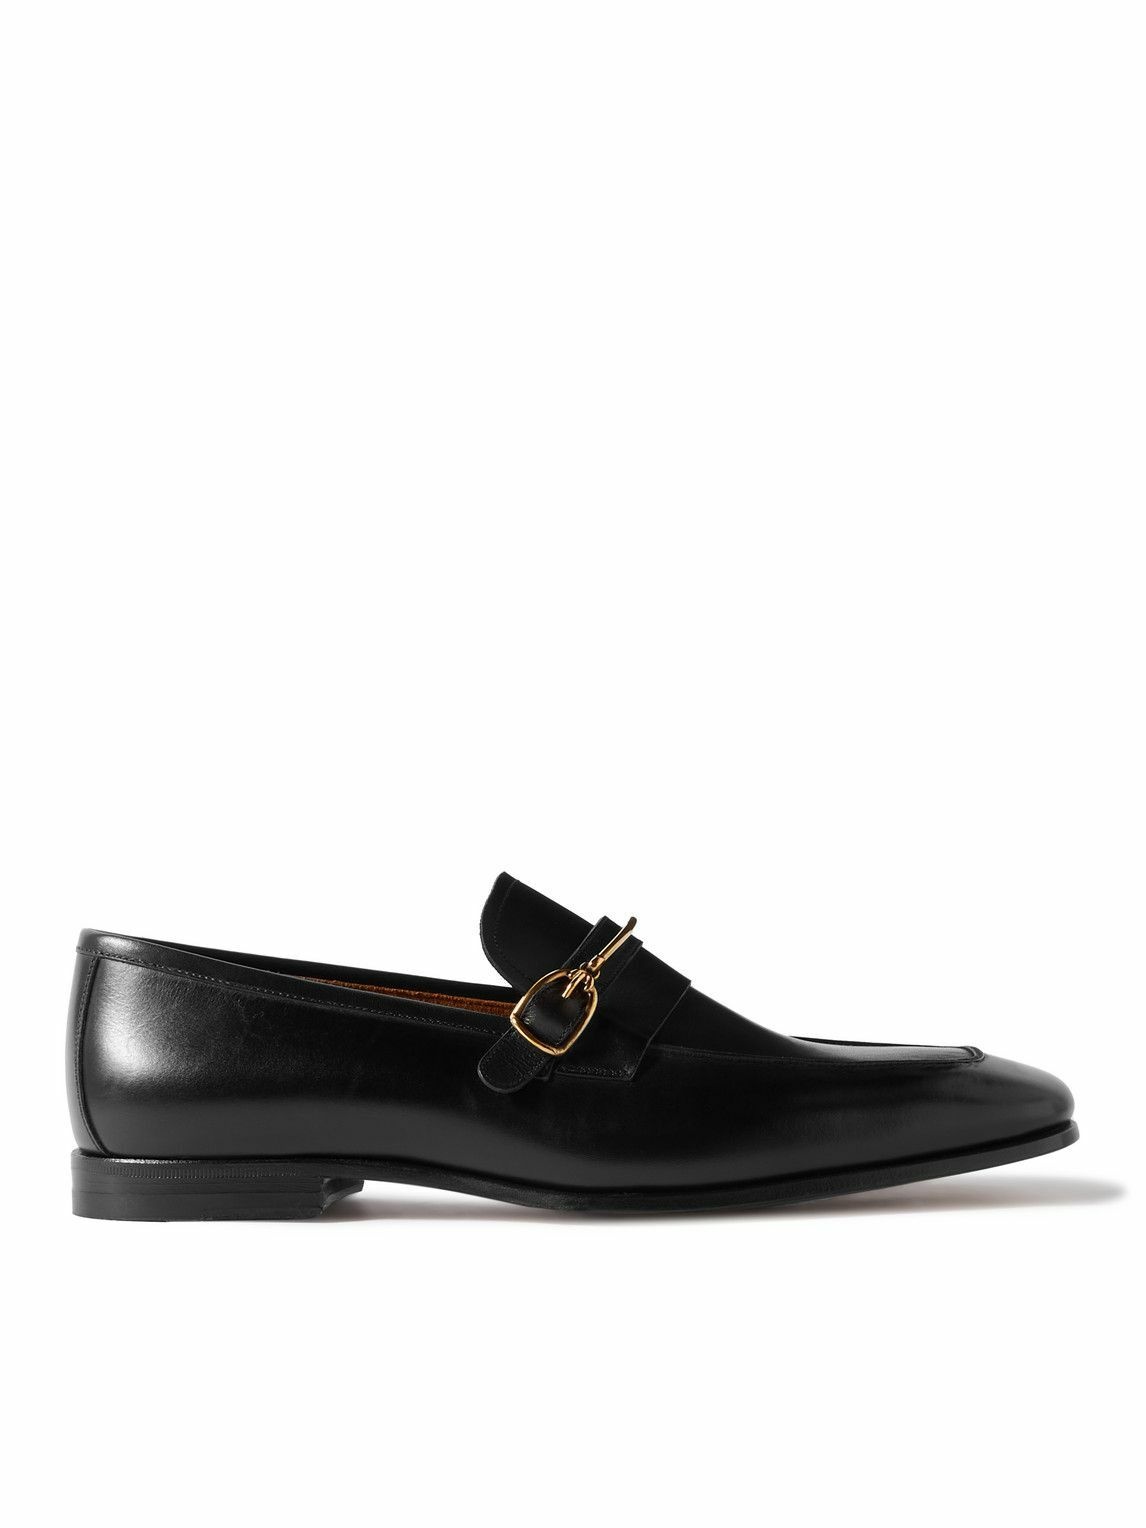 TOM FORD - Jack Embellished Patent-Leather Loafers - Black TOM FORD